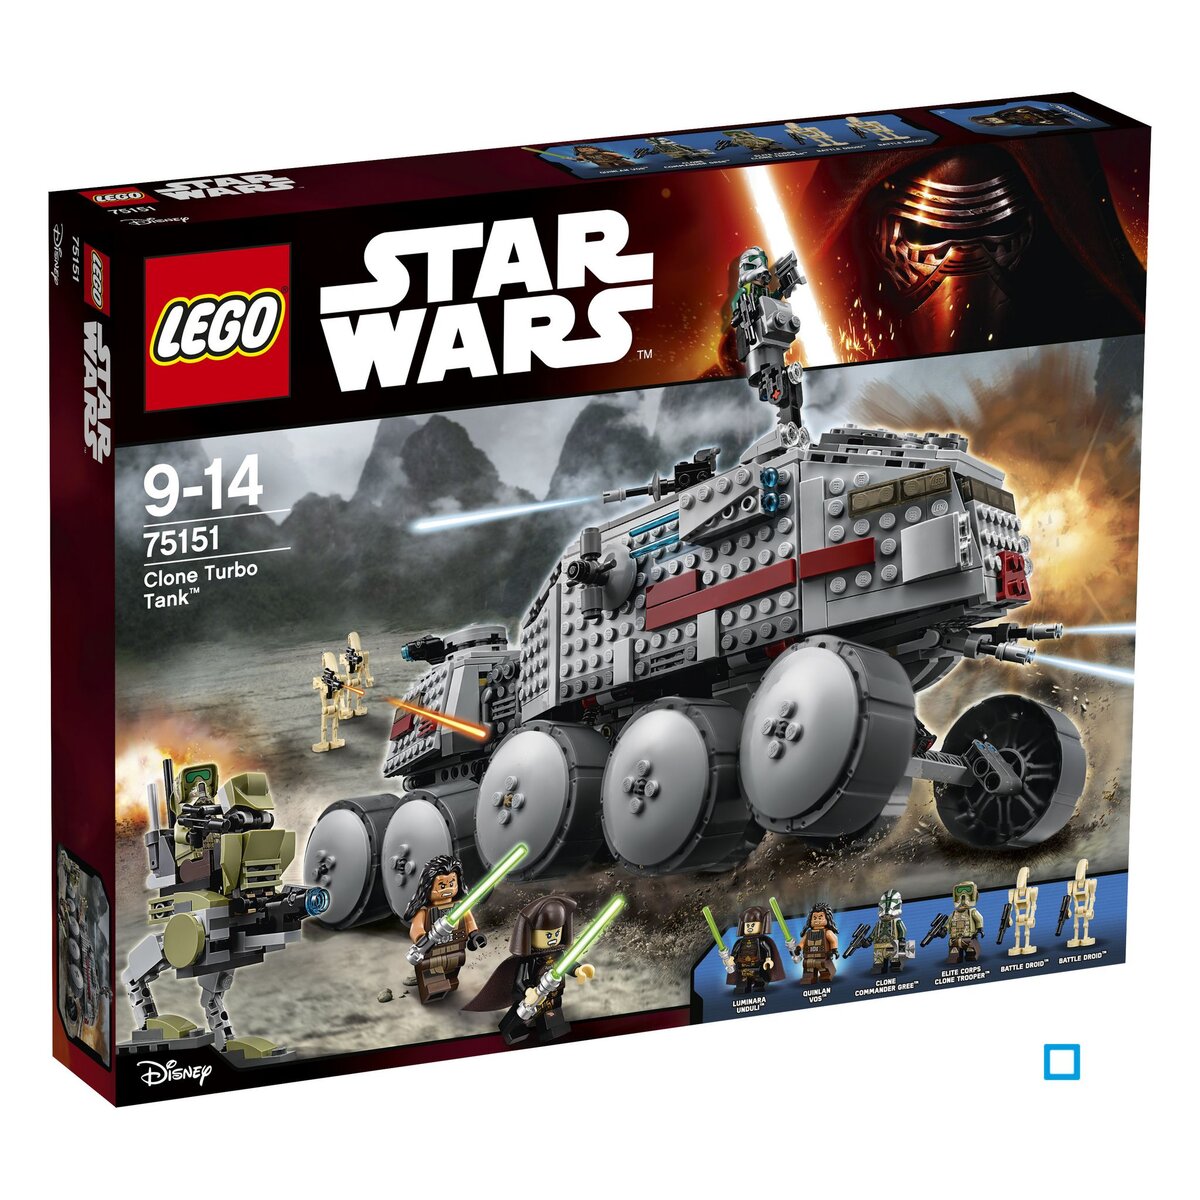 LEGO Star Wars 75151 - Clone Turbo Tank